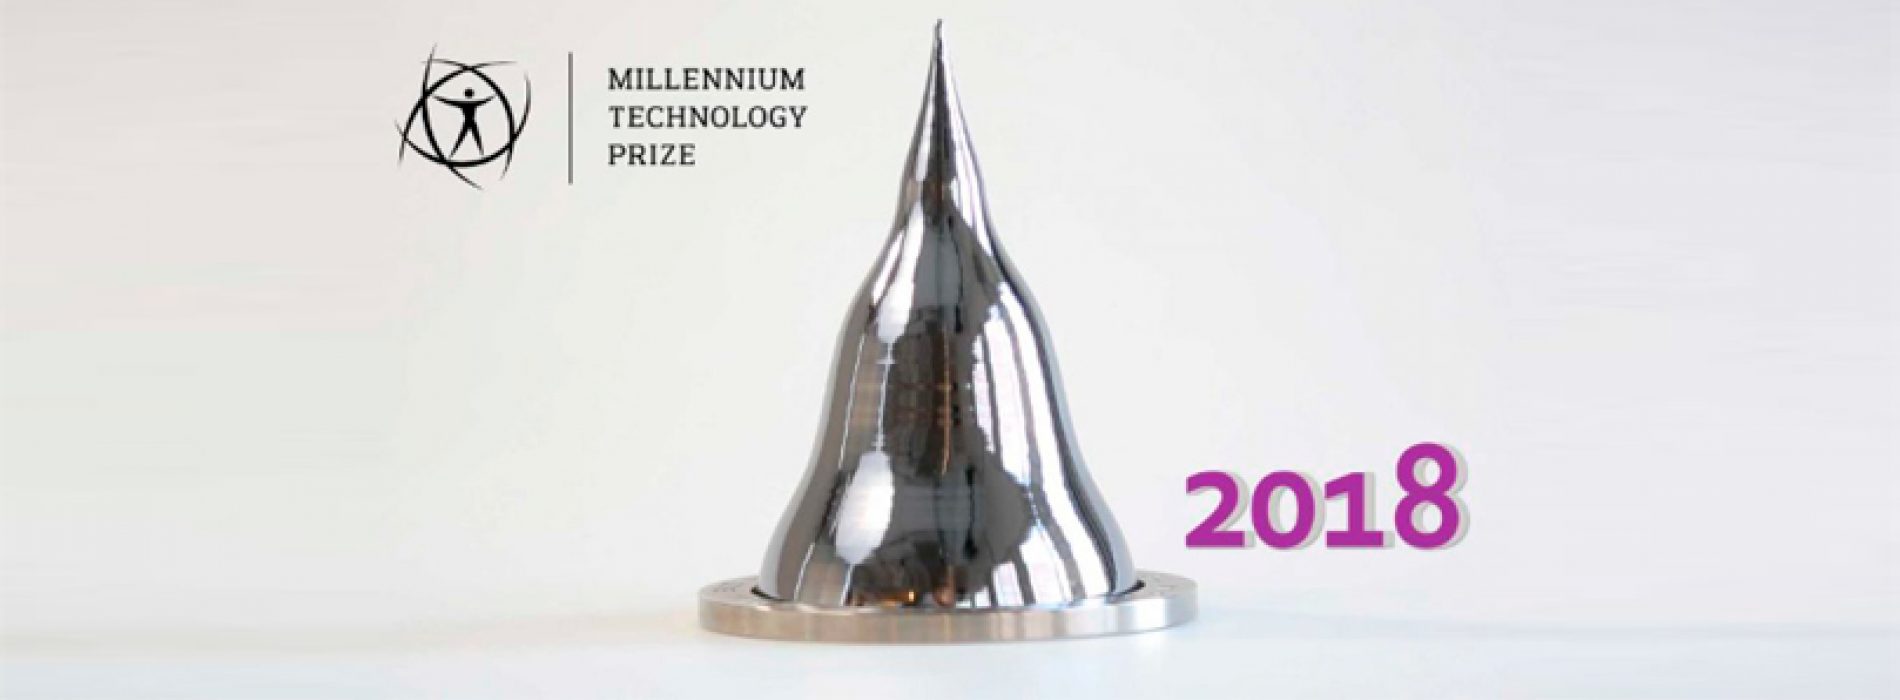 Comienzan nominaciones para el Premio de Tecnología del Milenio 2018